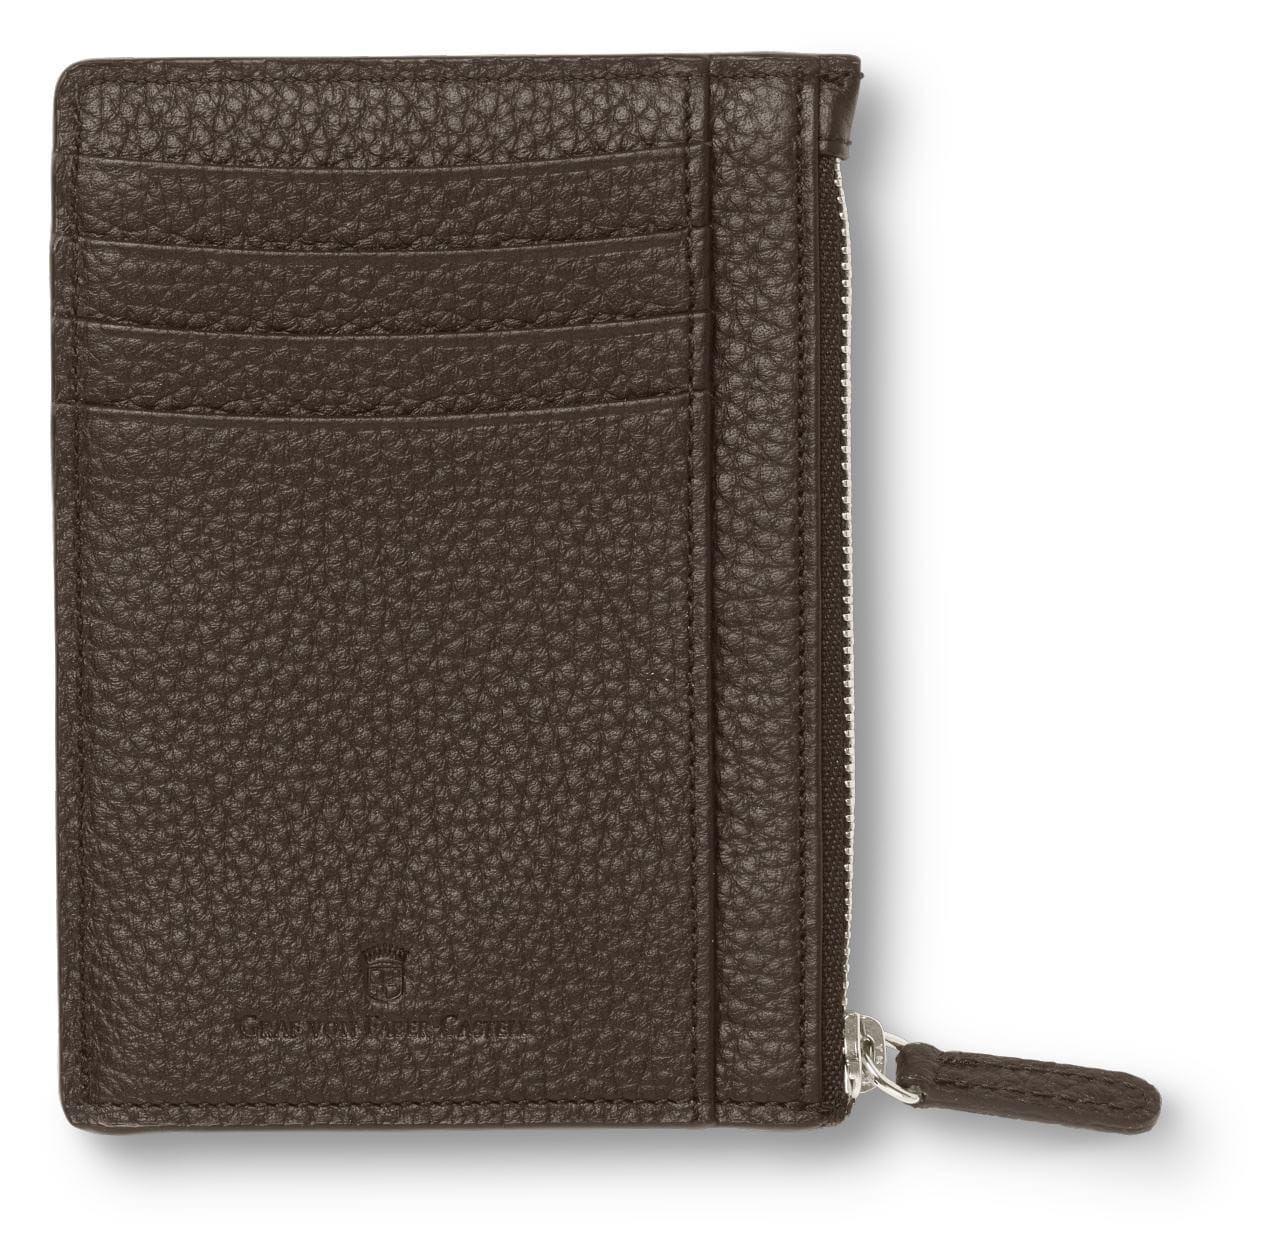 Graf-von-Faber-Castell - Credit card case with zipper Cashmere, dark brown